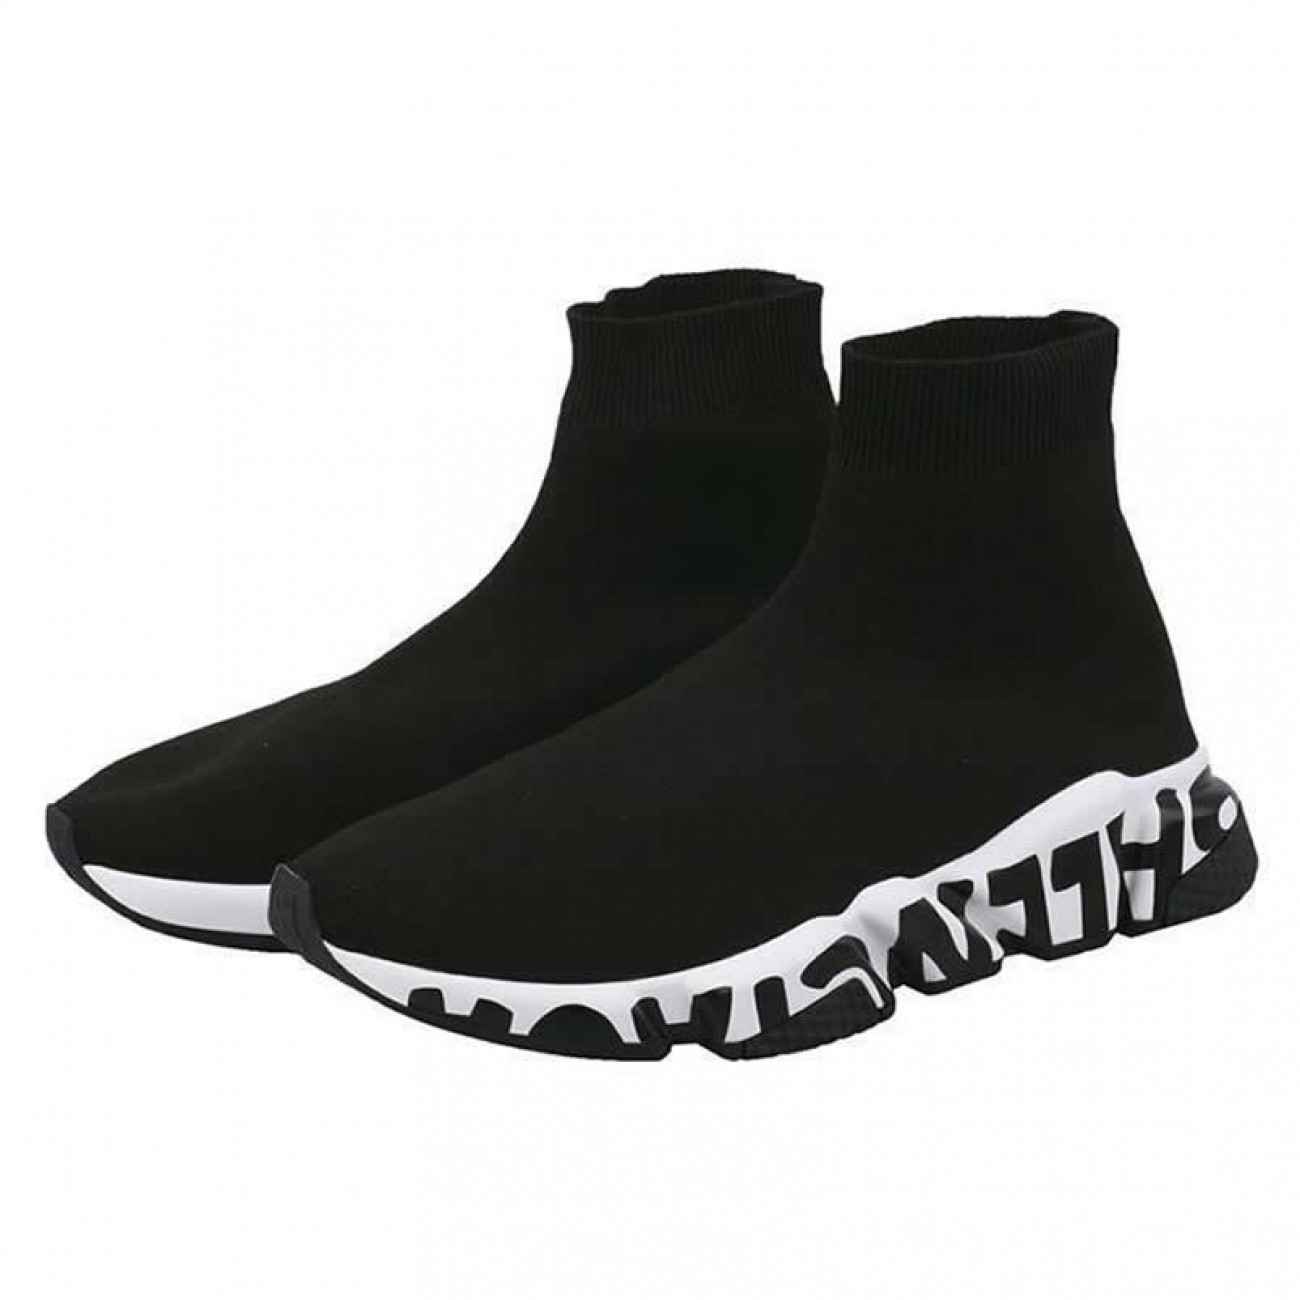 Balenciaga Shoes Like Socks High Top Speed Runners Black/White 605972W05GE1015